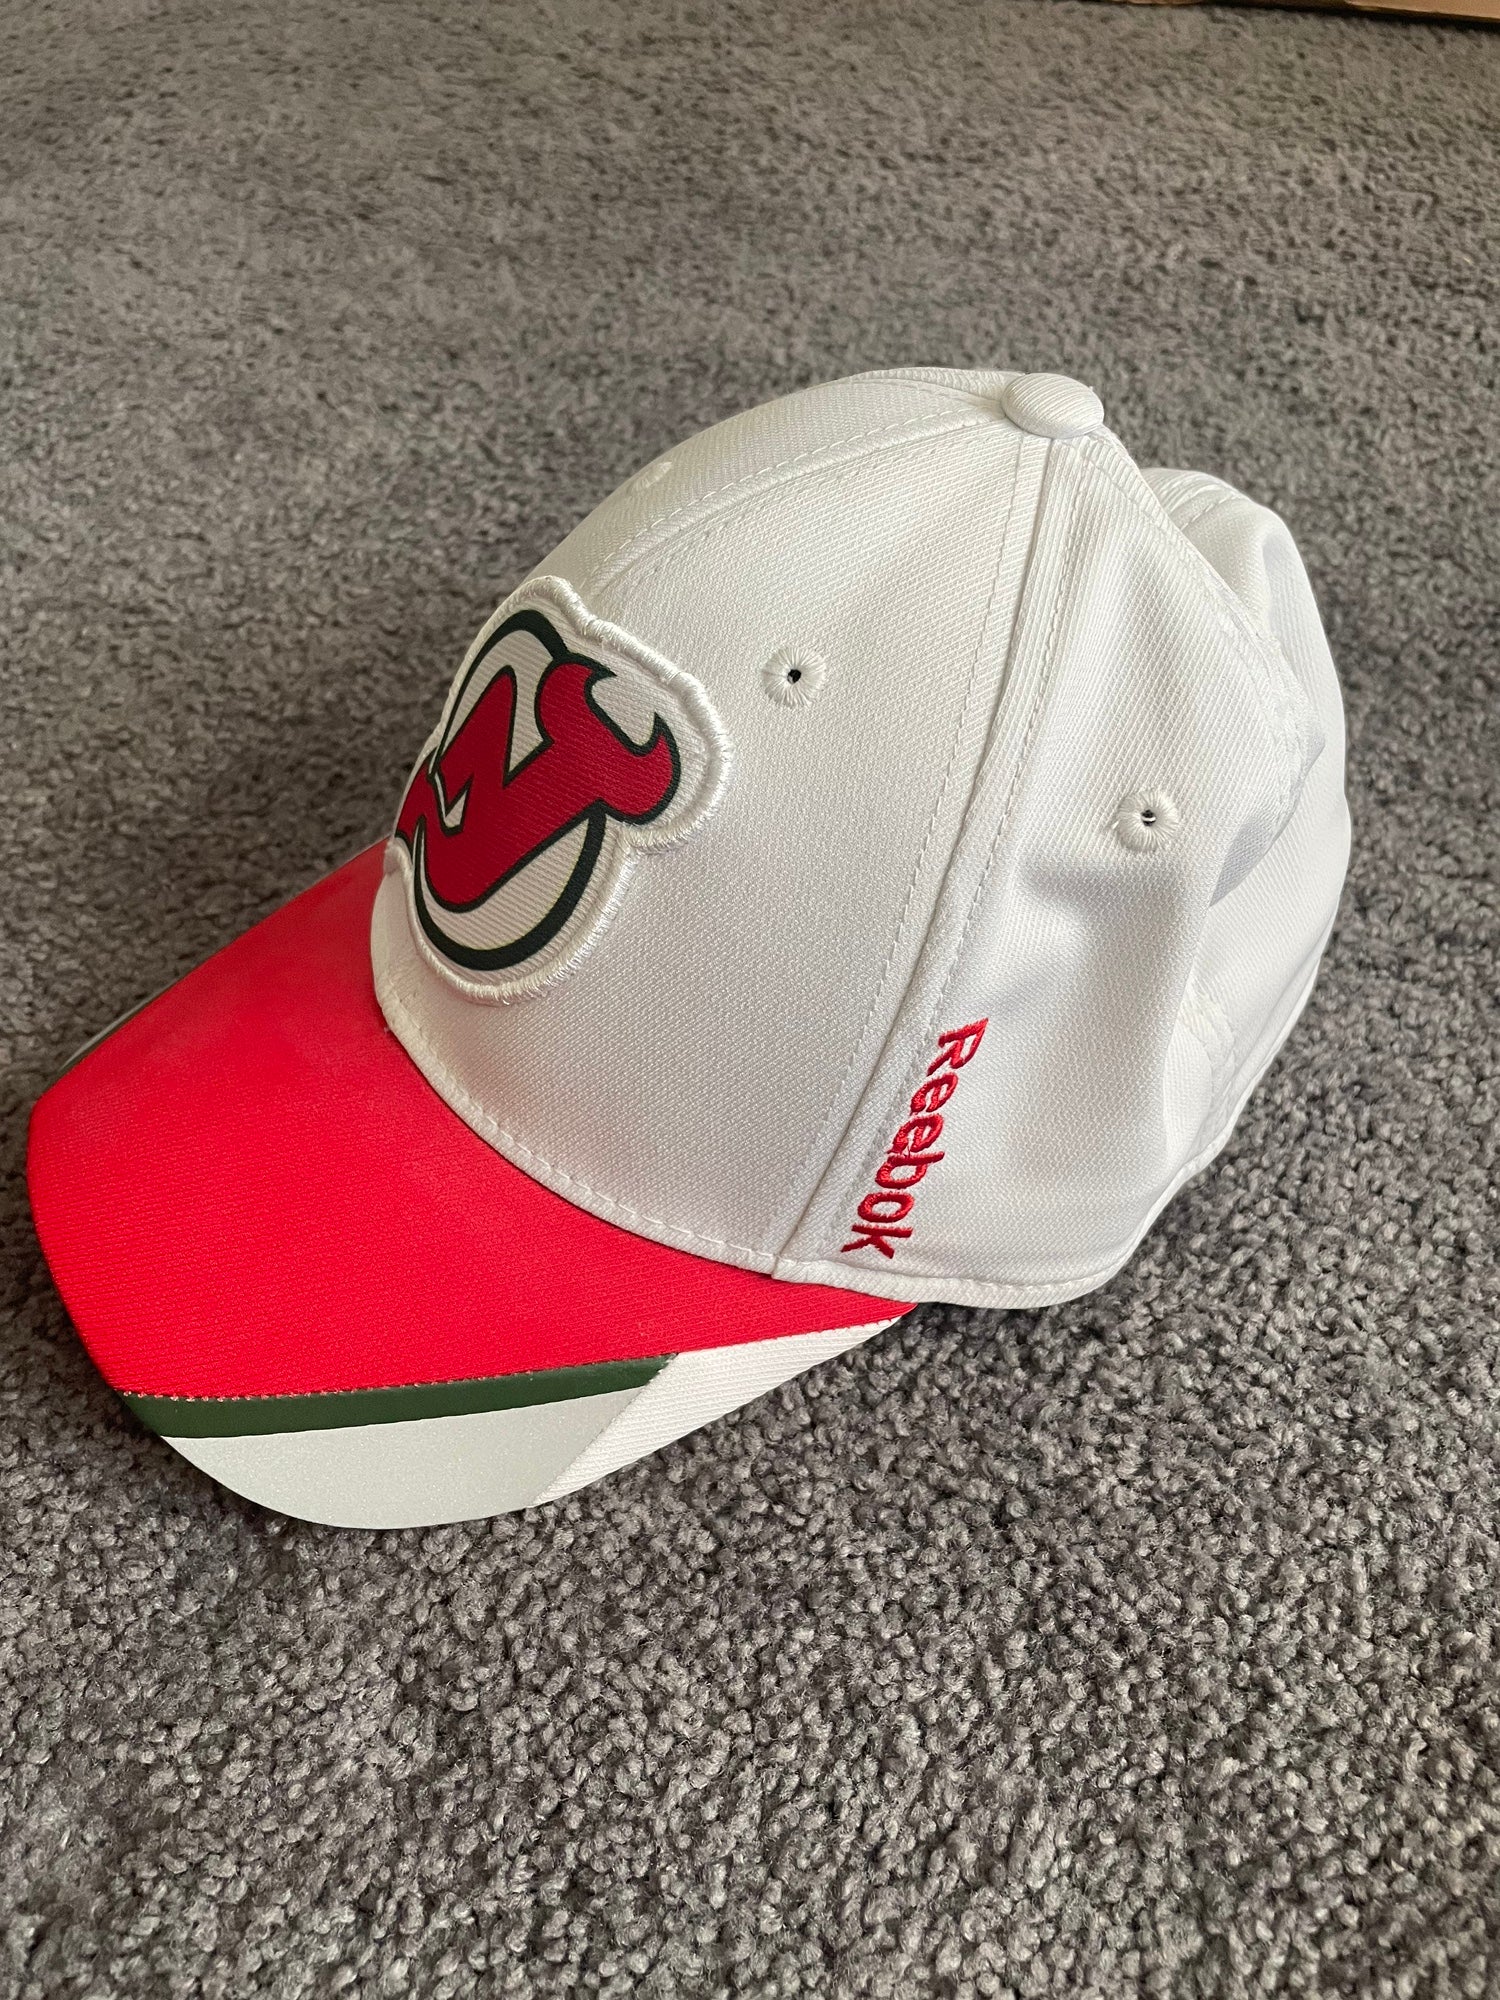 Reebok New Jersey Devils Distressed Face-Off Adjustable Mesh Back Hat -  Red/Black